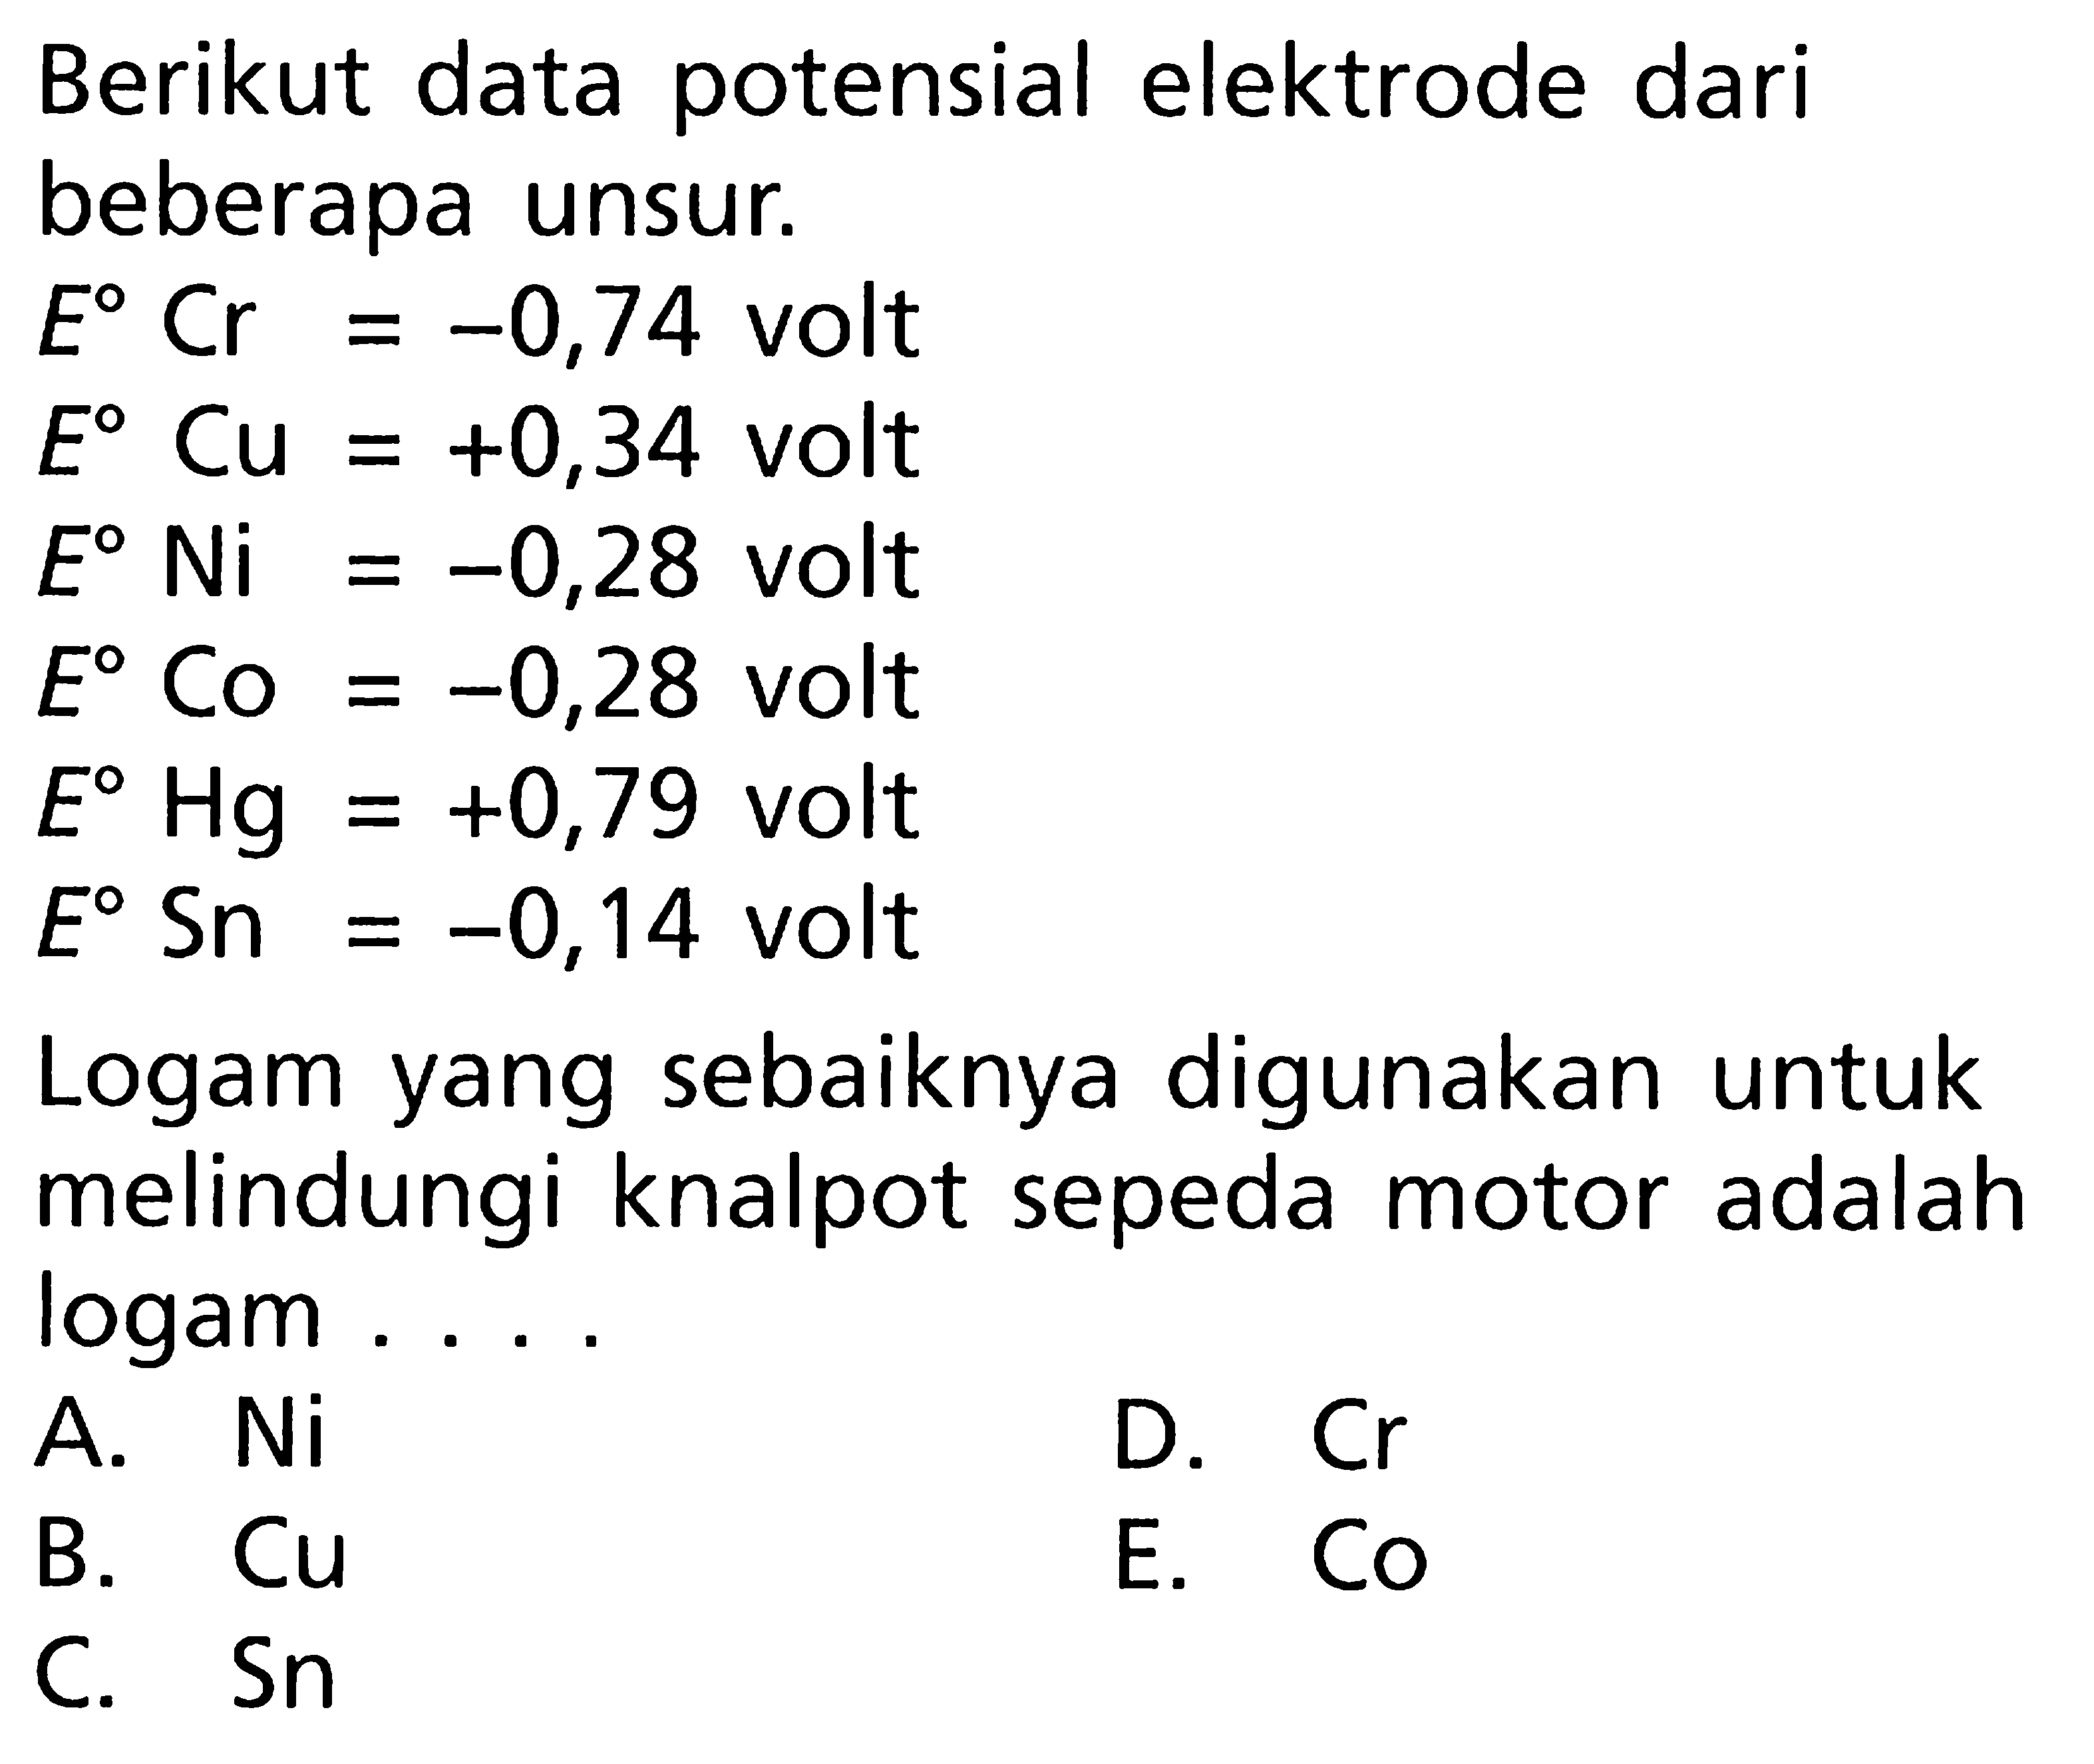 Berikut data potensial elektrode dari beberapa unsur. E^0 Cr = -0,74 volt E^0 Cu = +0,34 volt E^0 Ni = -0,28 volt E^0 Co = -0,28 volt E^0 Hg = +0,79 volt E^0 Sn = -0,14 volt Logam yang sebaiknya digunakan untuk melindungi knalpot sepeda motor adalah logam ....